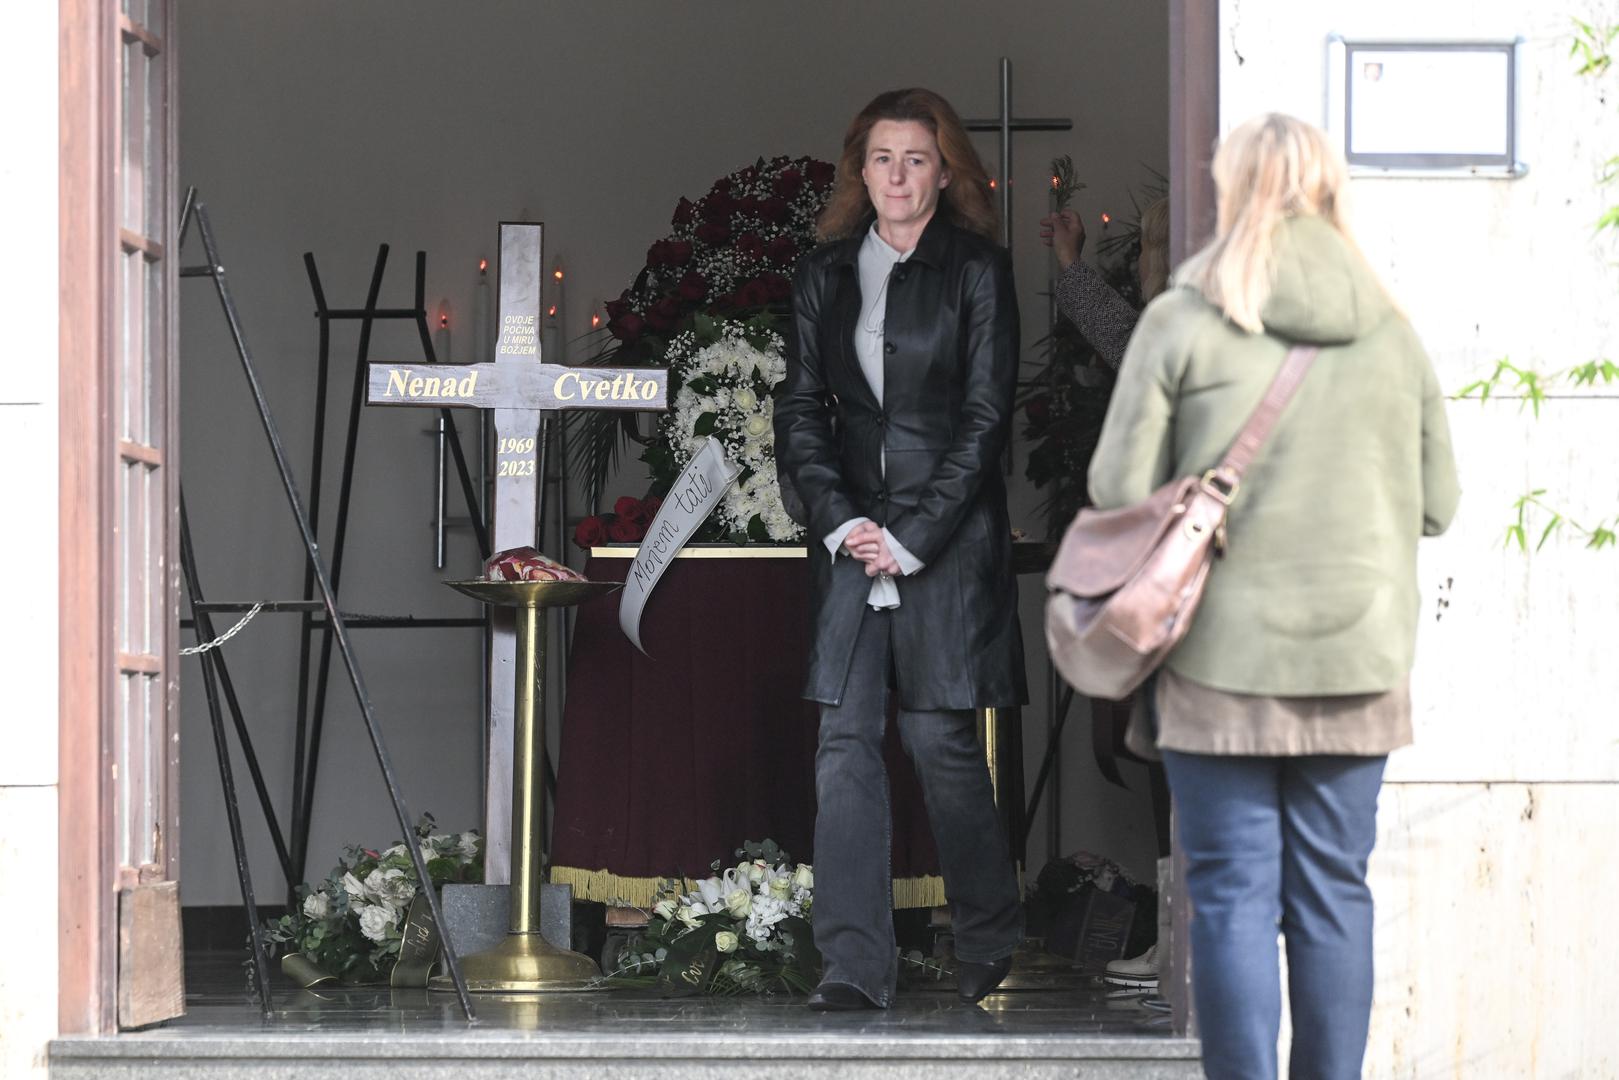 Obitelj i brojni kolege i prijatelji oprostili su se danas na groblju u Vrapču od glumca Nenada Cvetka koji je prošli tjedan preminuo u 55. godini nakon borbe s teškom bolešću.